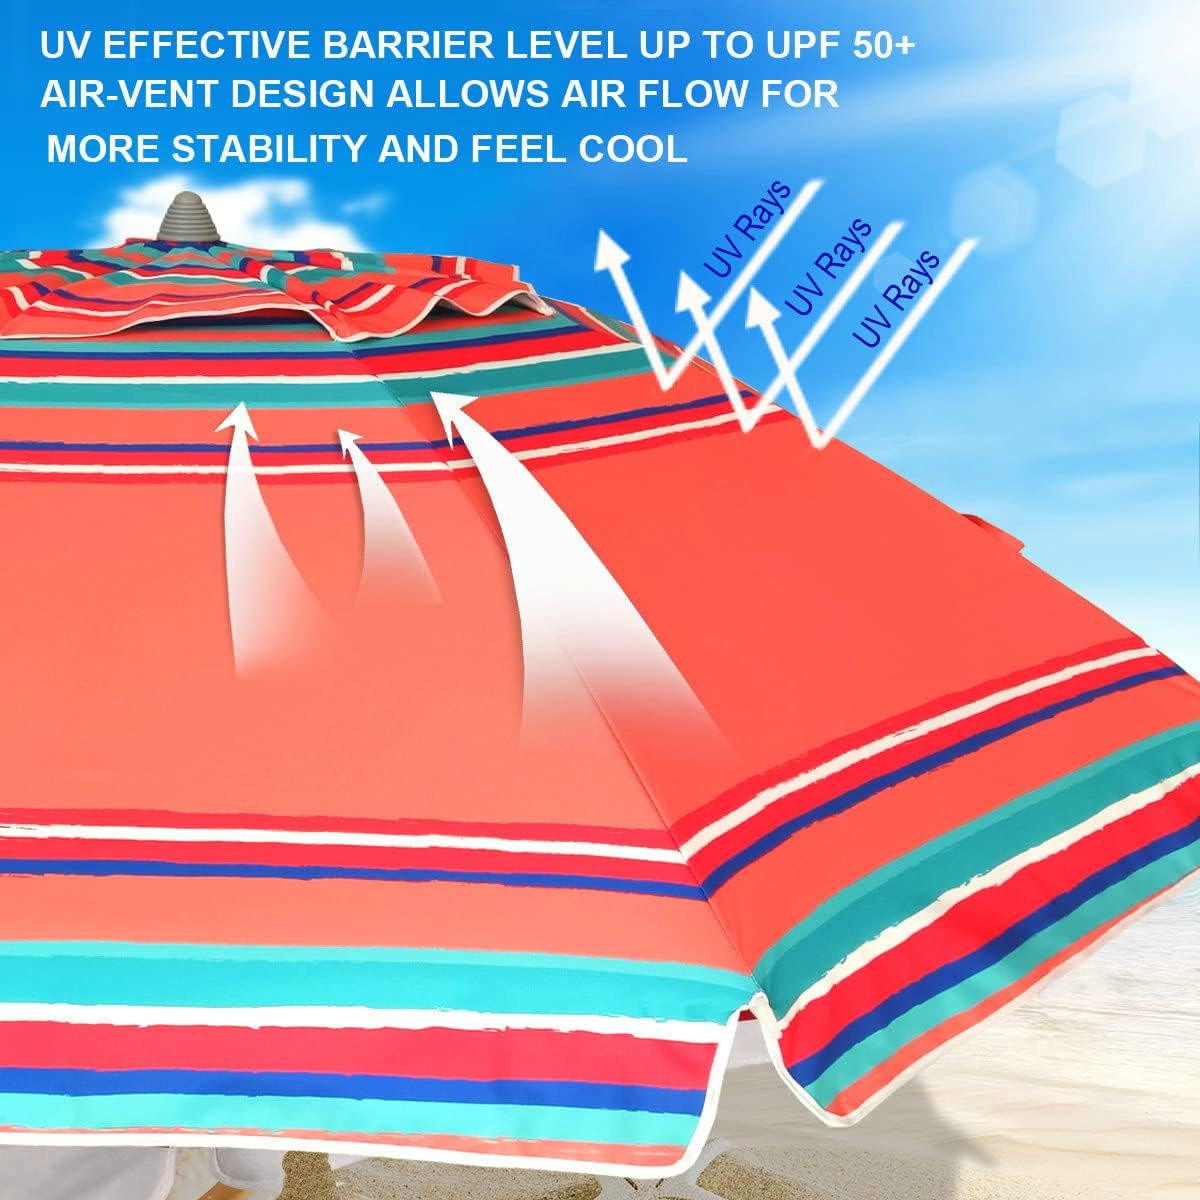 AMMSUN 7ft Heavy Duty HIGH Wind Beach Umbrella with sand anchor